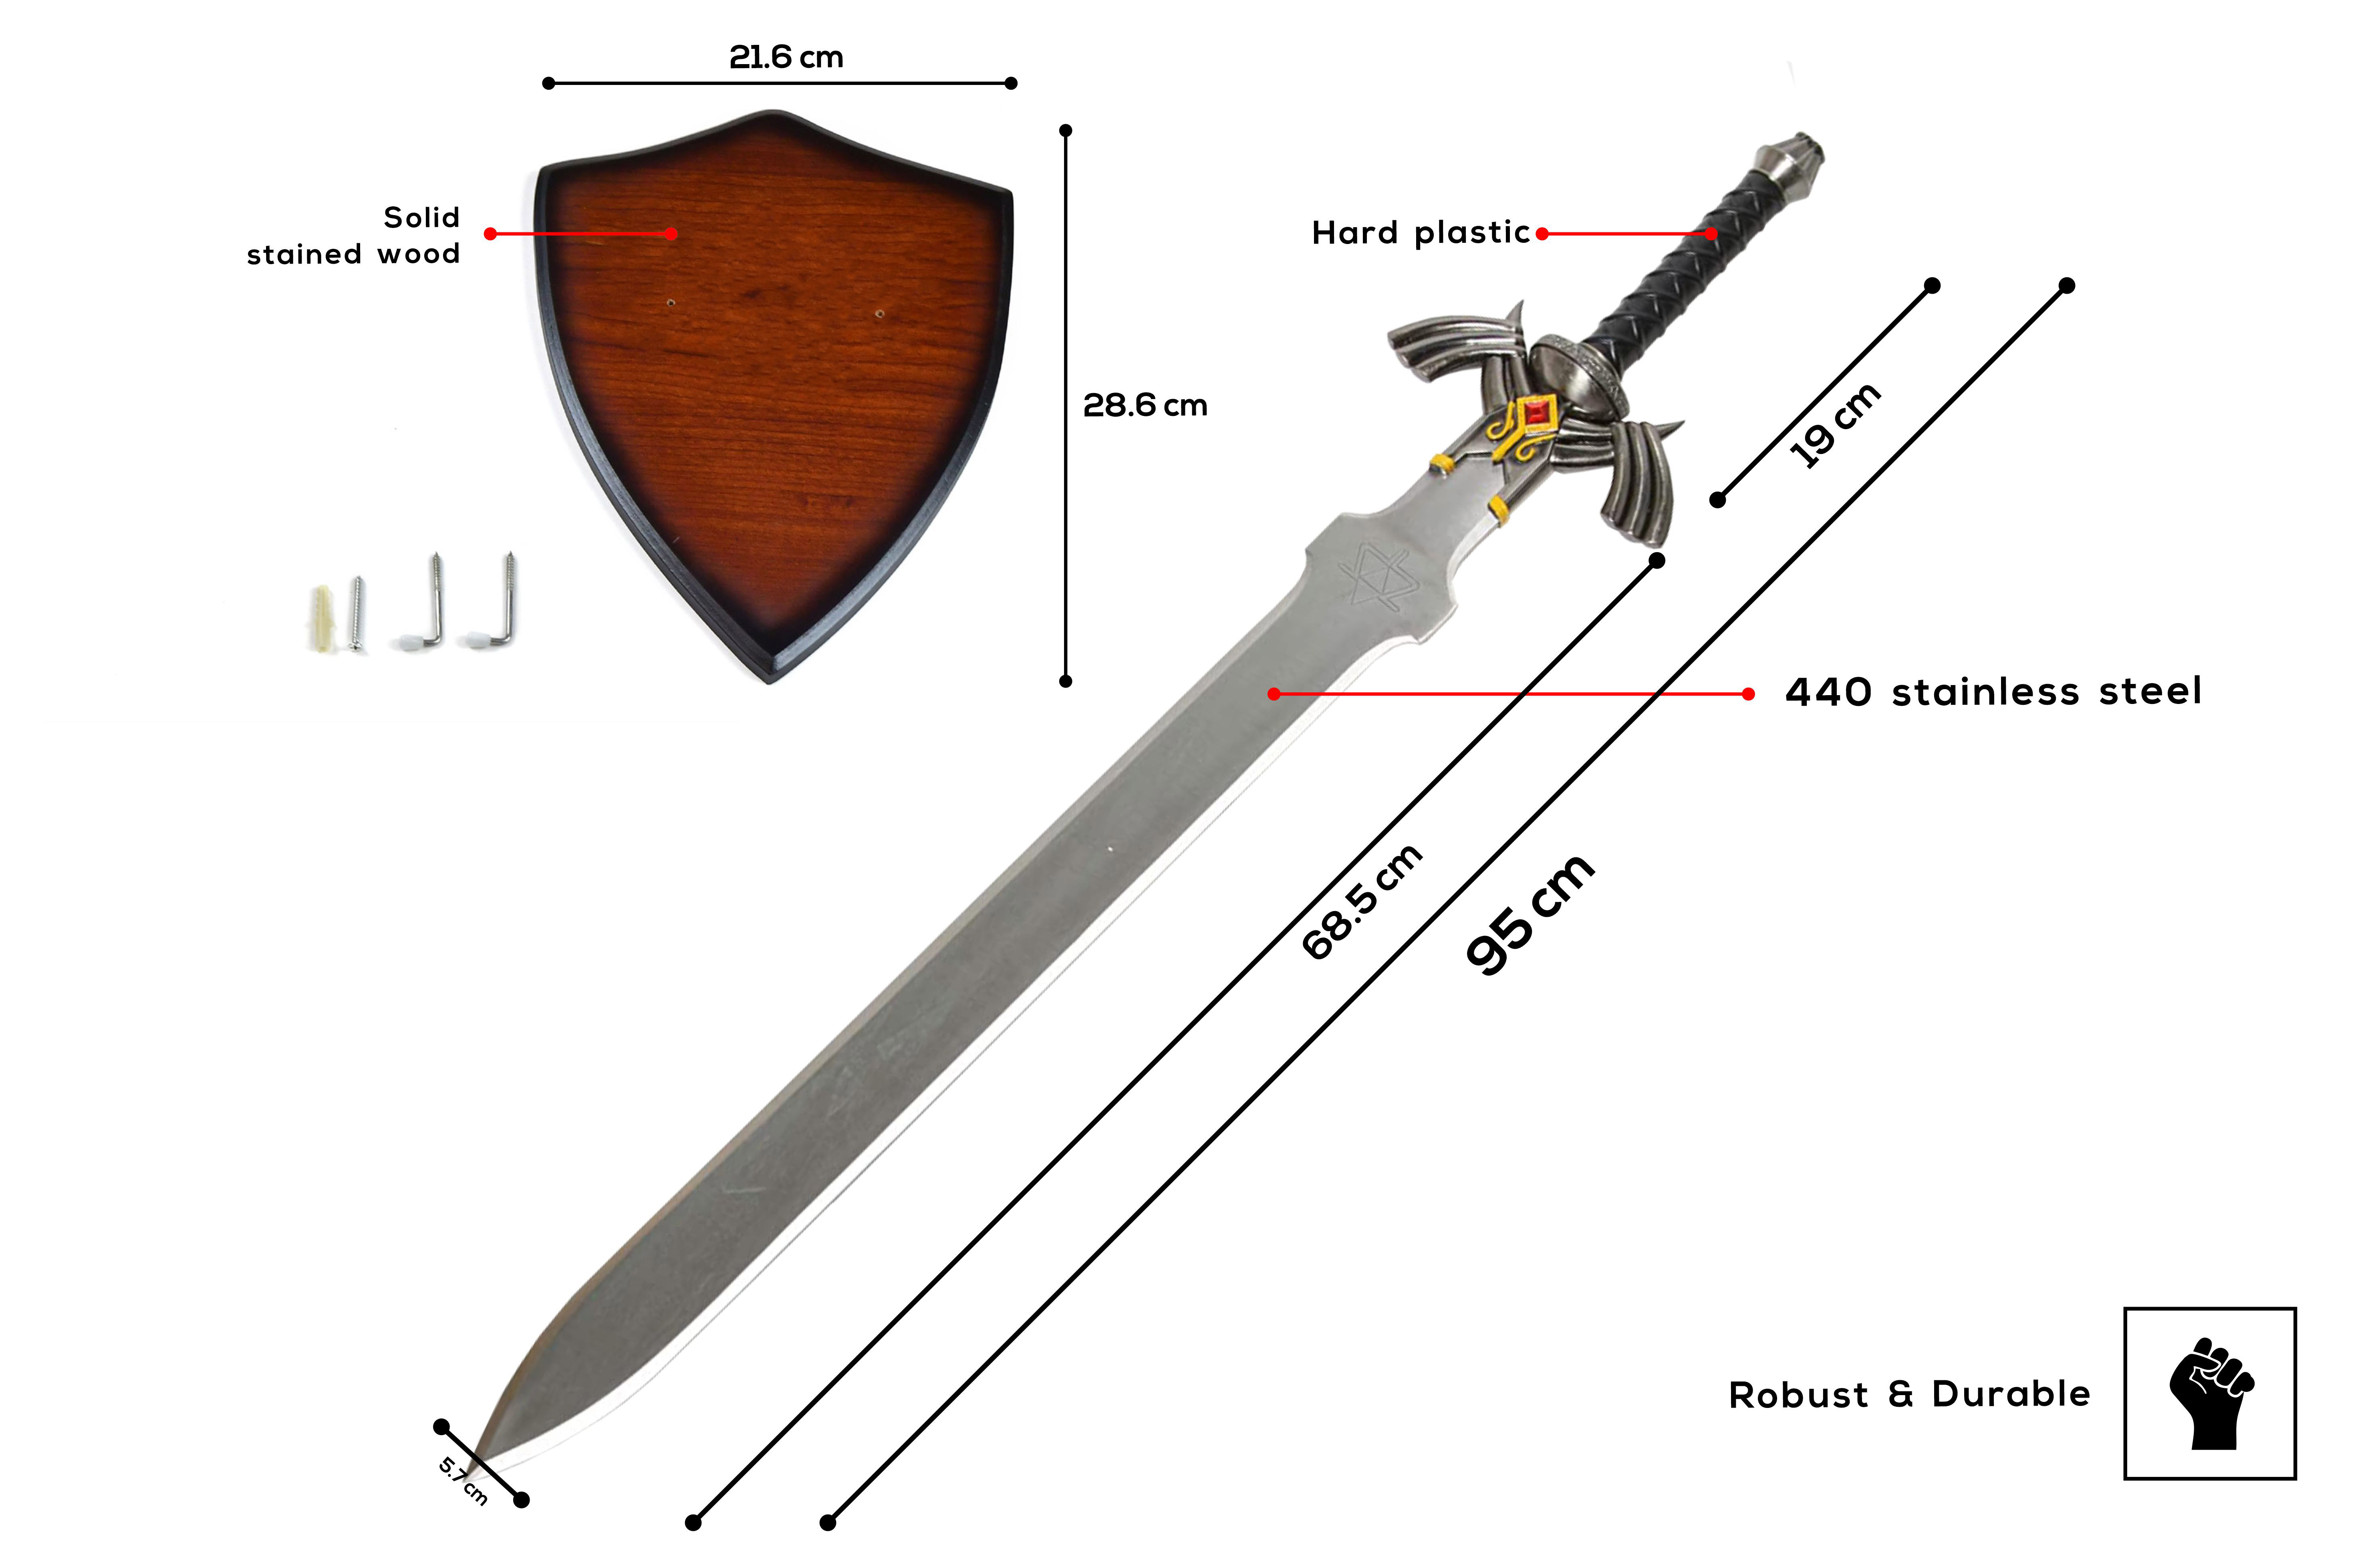 Link Master Sword Zelda Twilight Princess Sword with Plaque